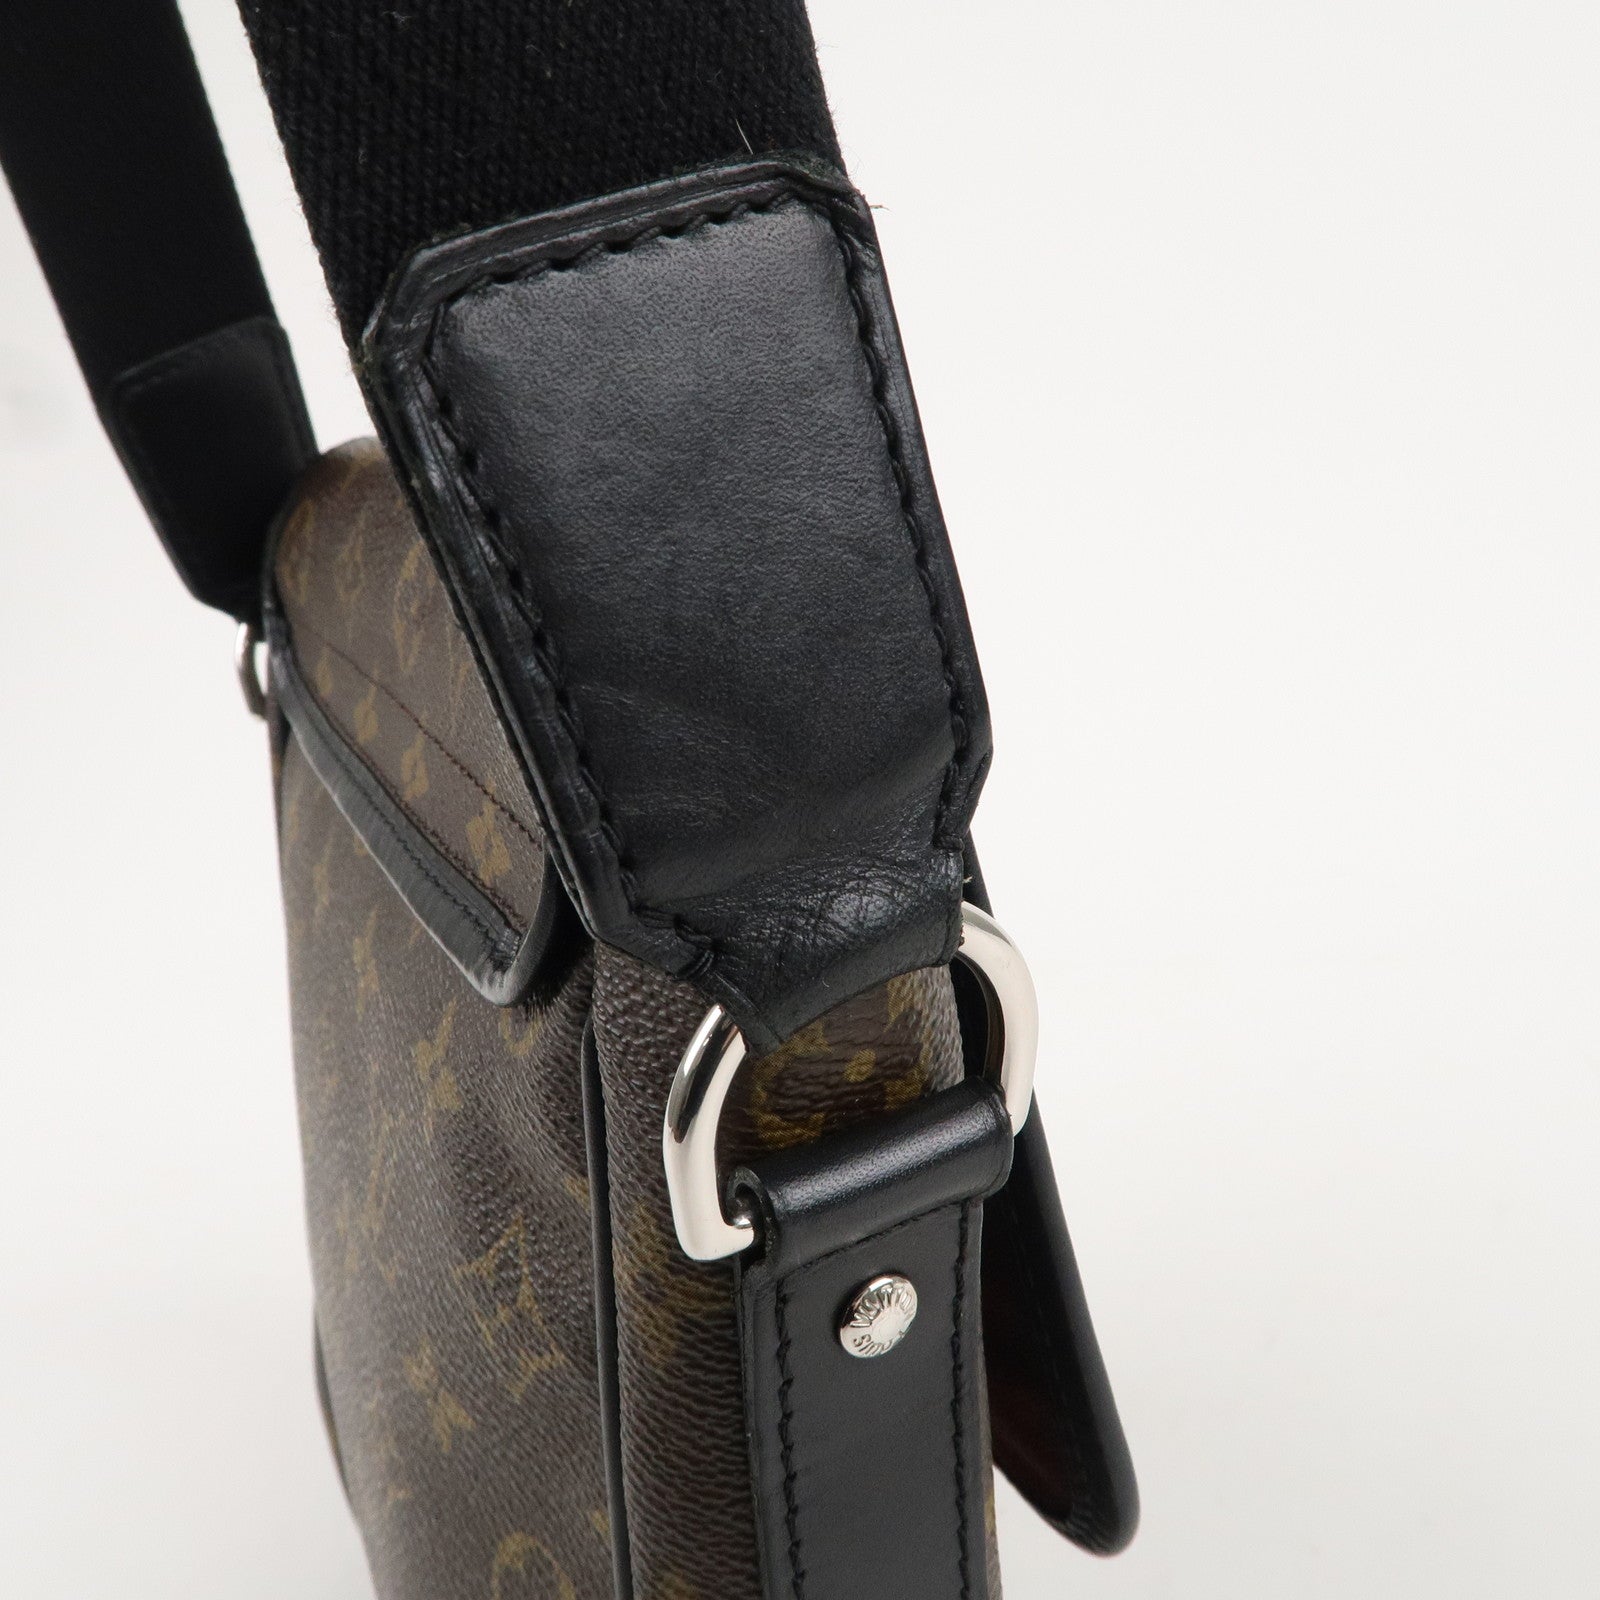 Louis-Vuitton-Monogram-Macassar-Bass-PM-Shoulder-Bag-M56717